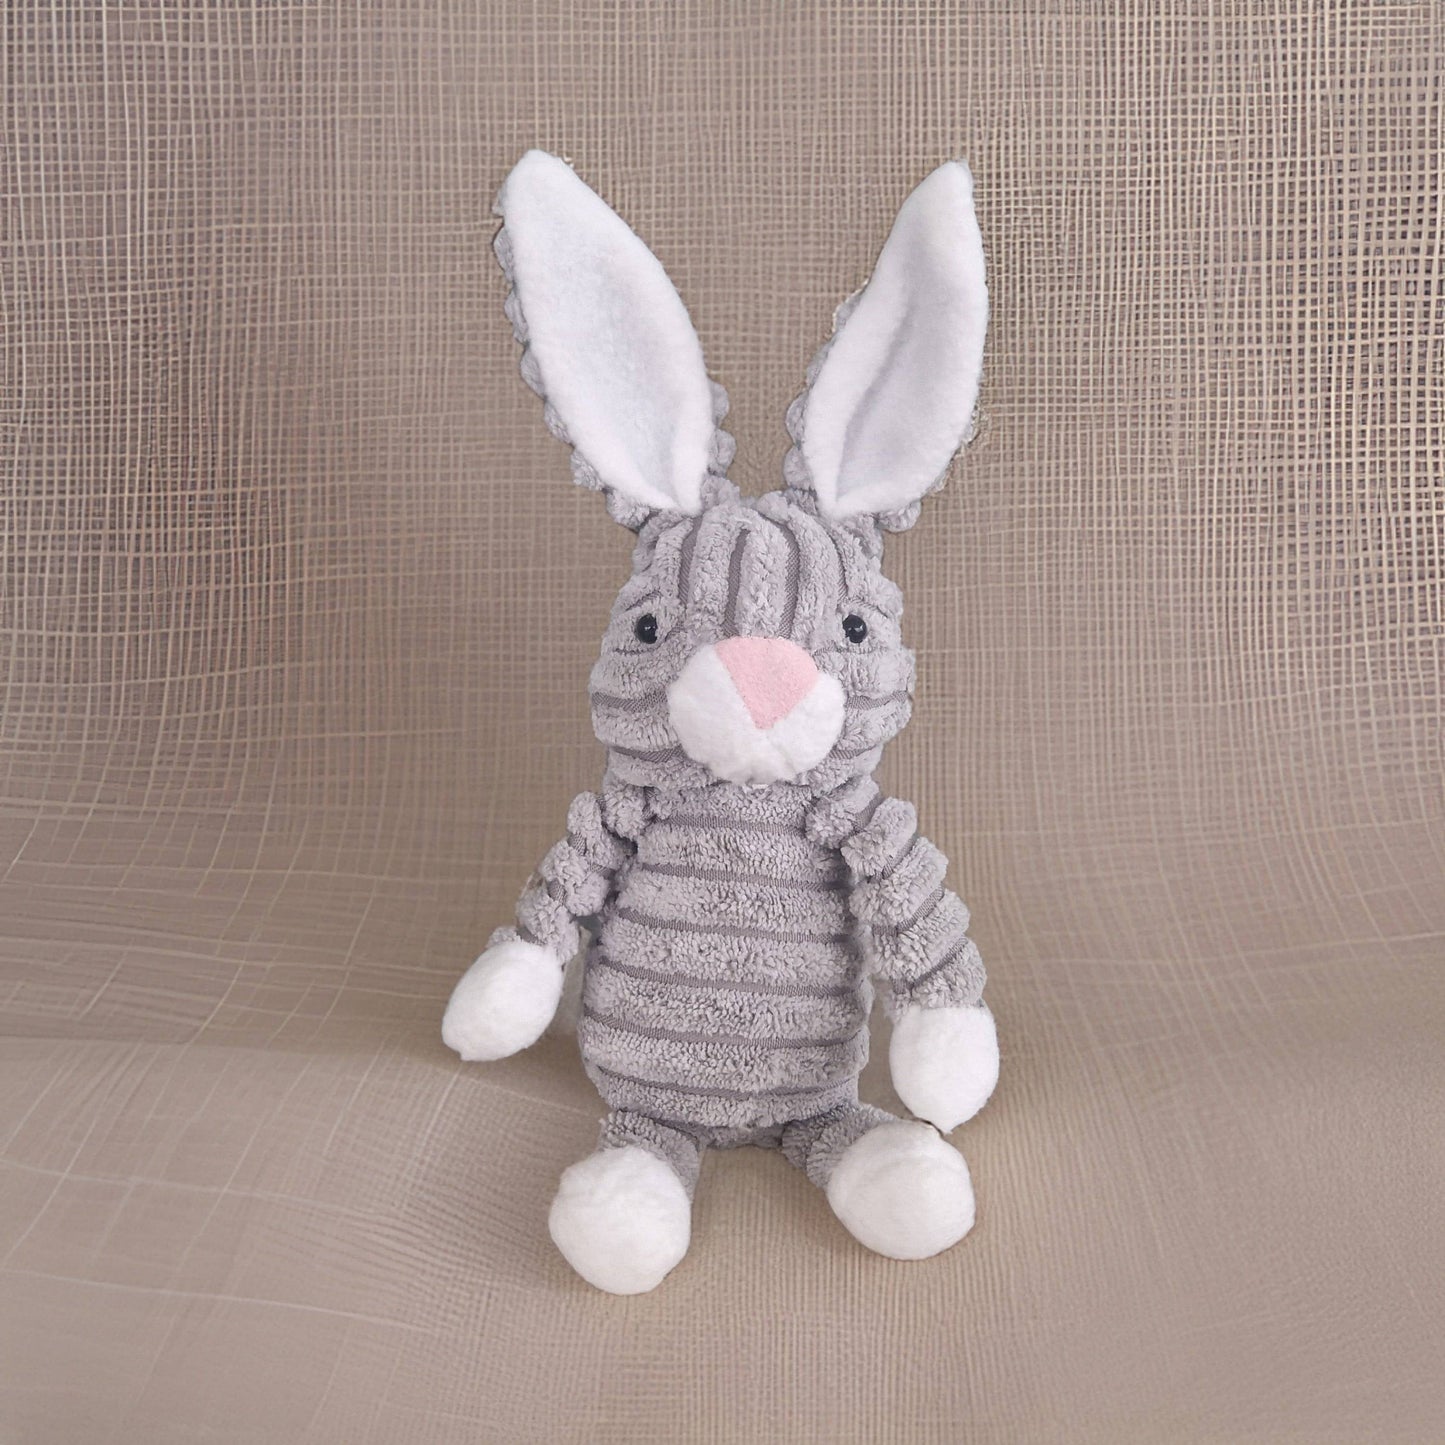 cuddly bunny soft toy